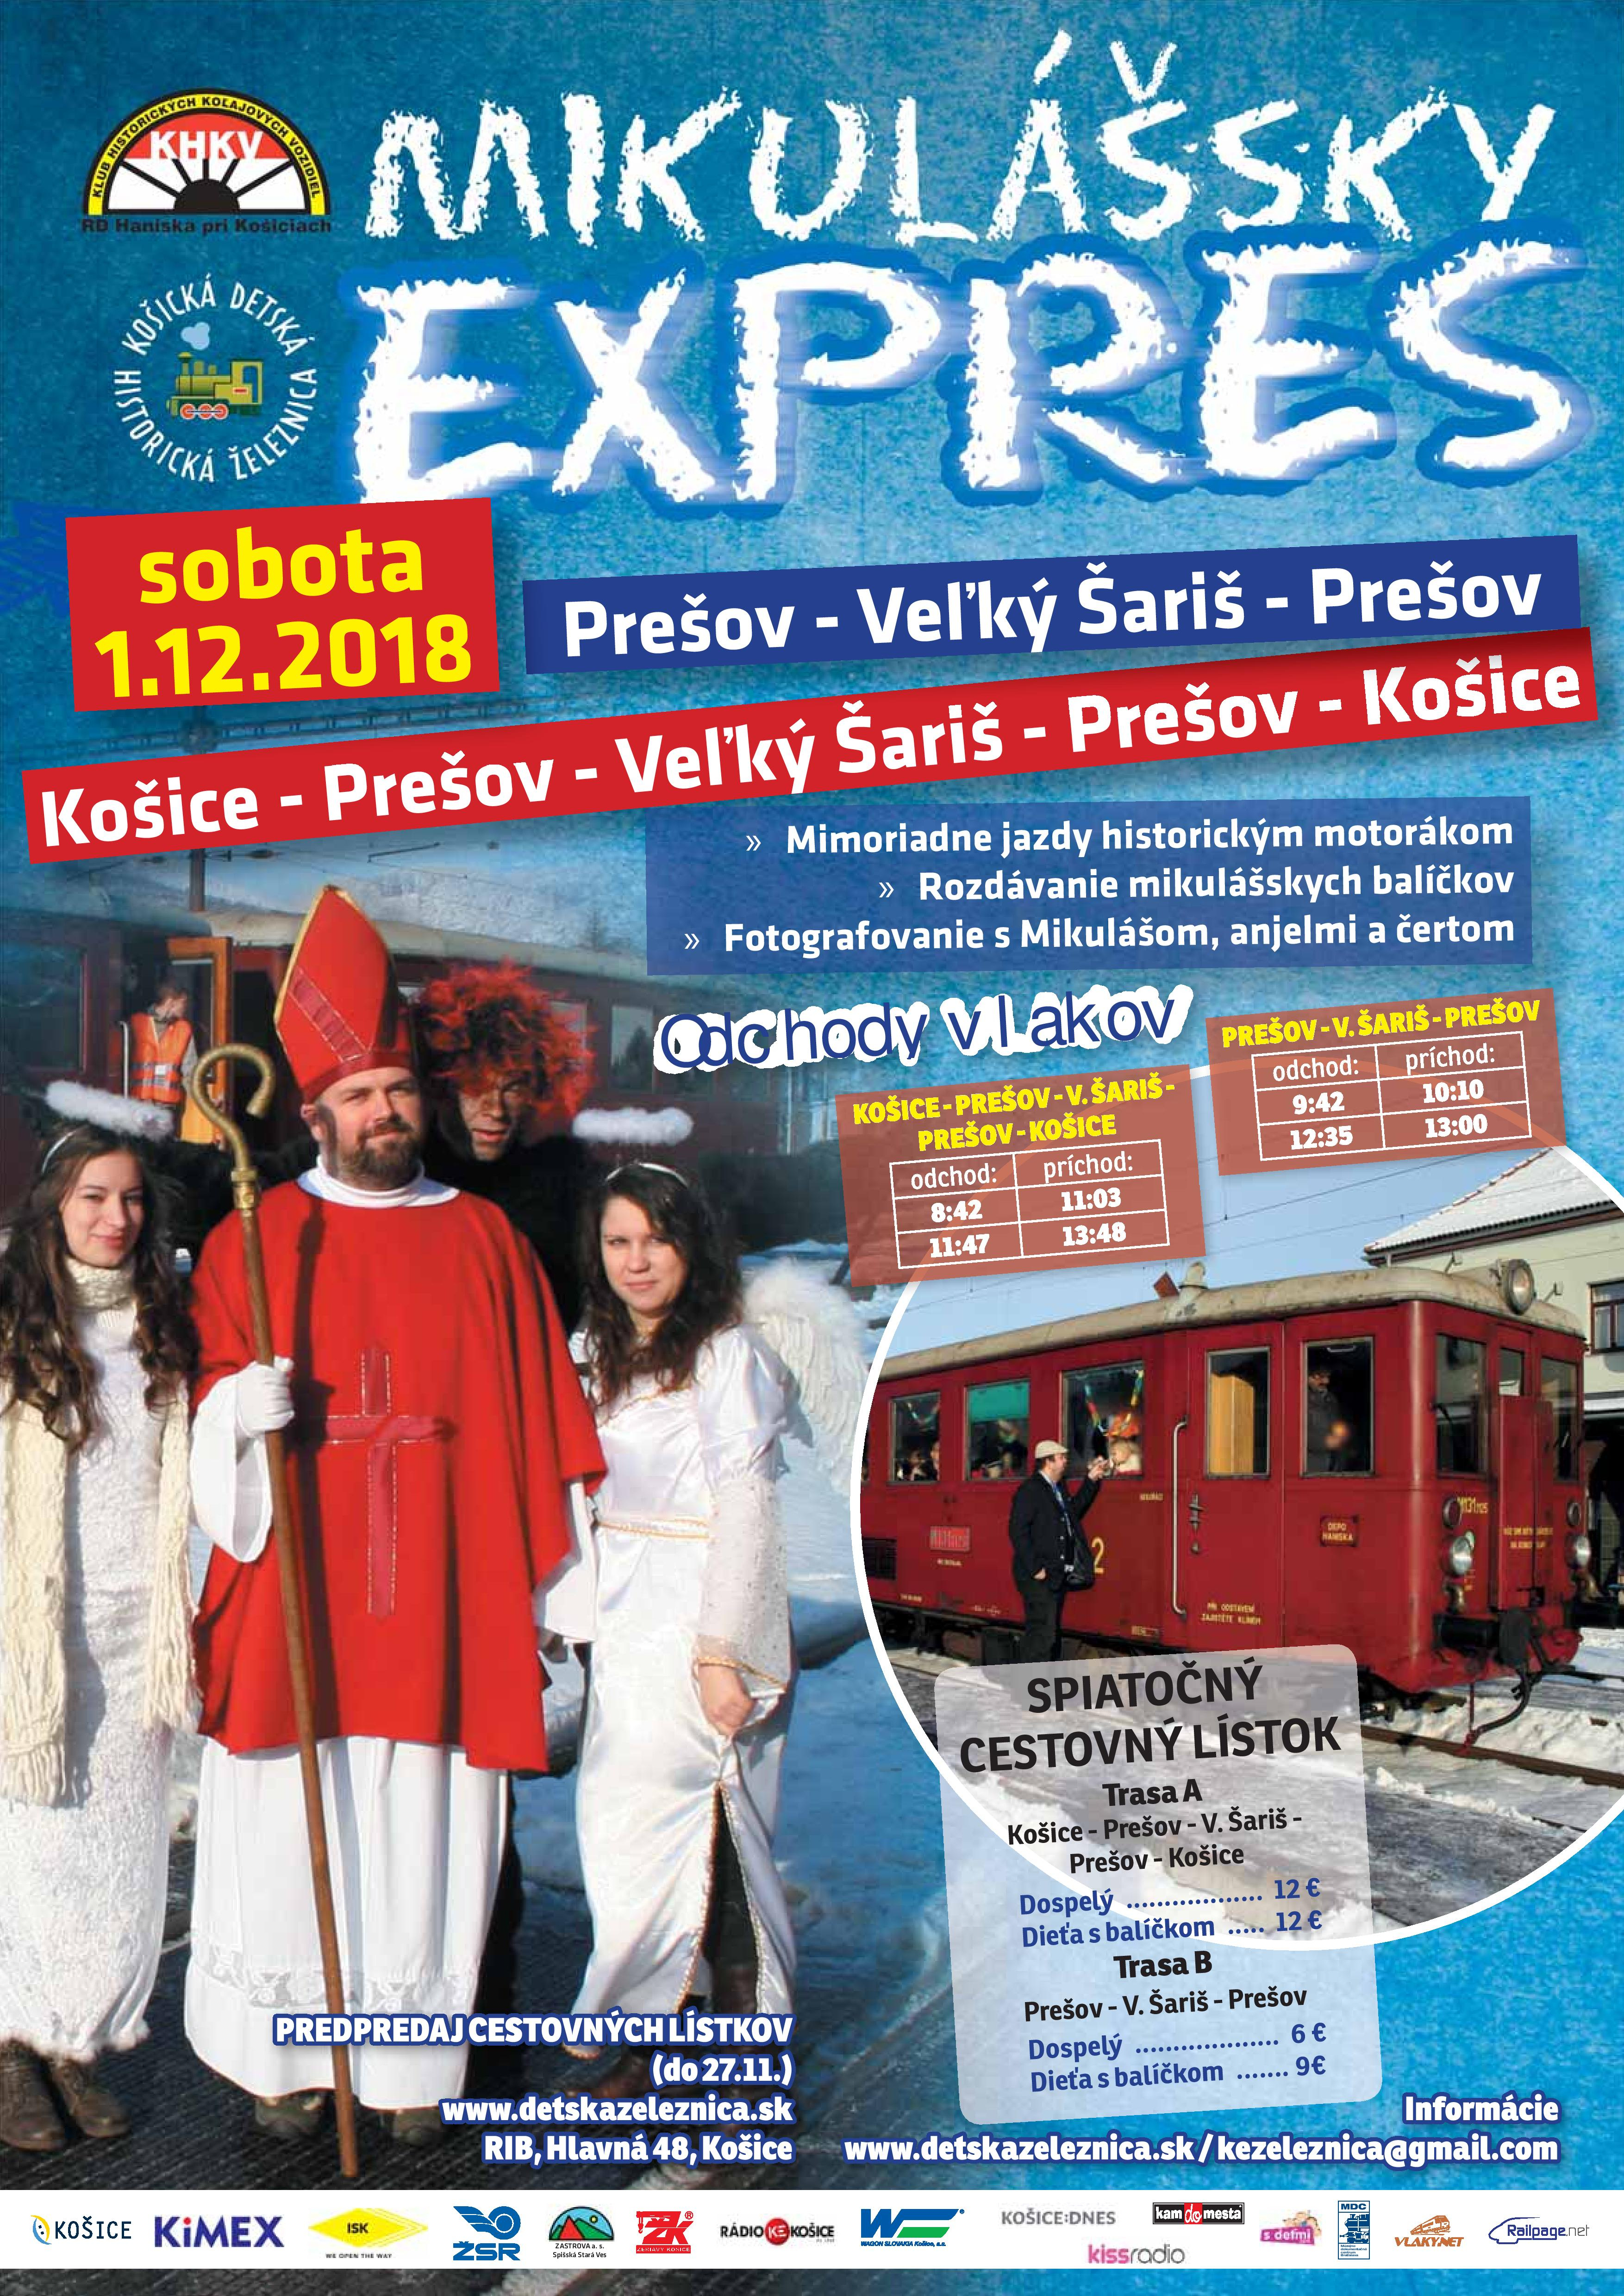 Mikulášsky expres Košice-Prešov-V.Šariš